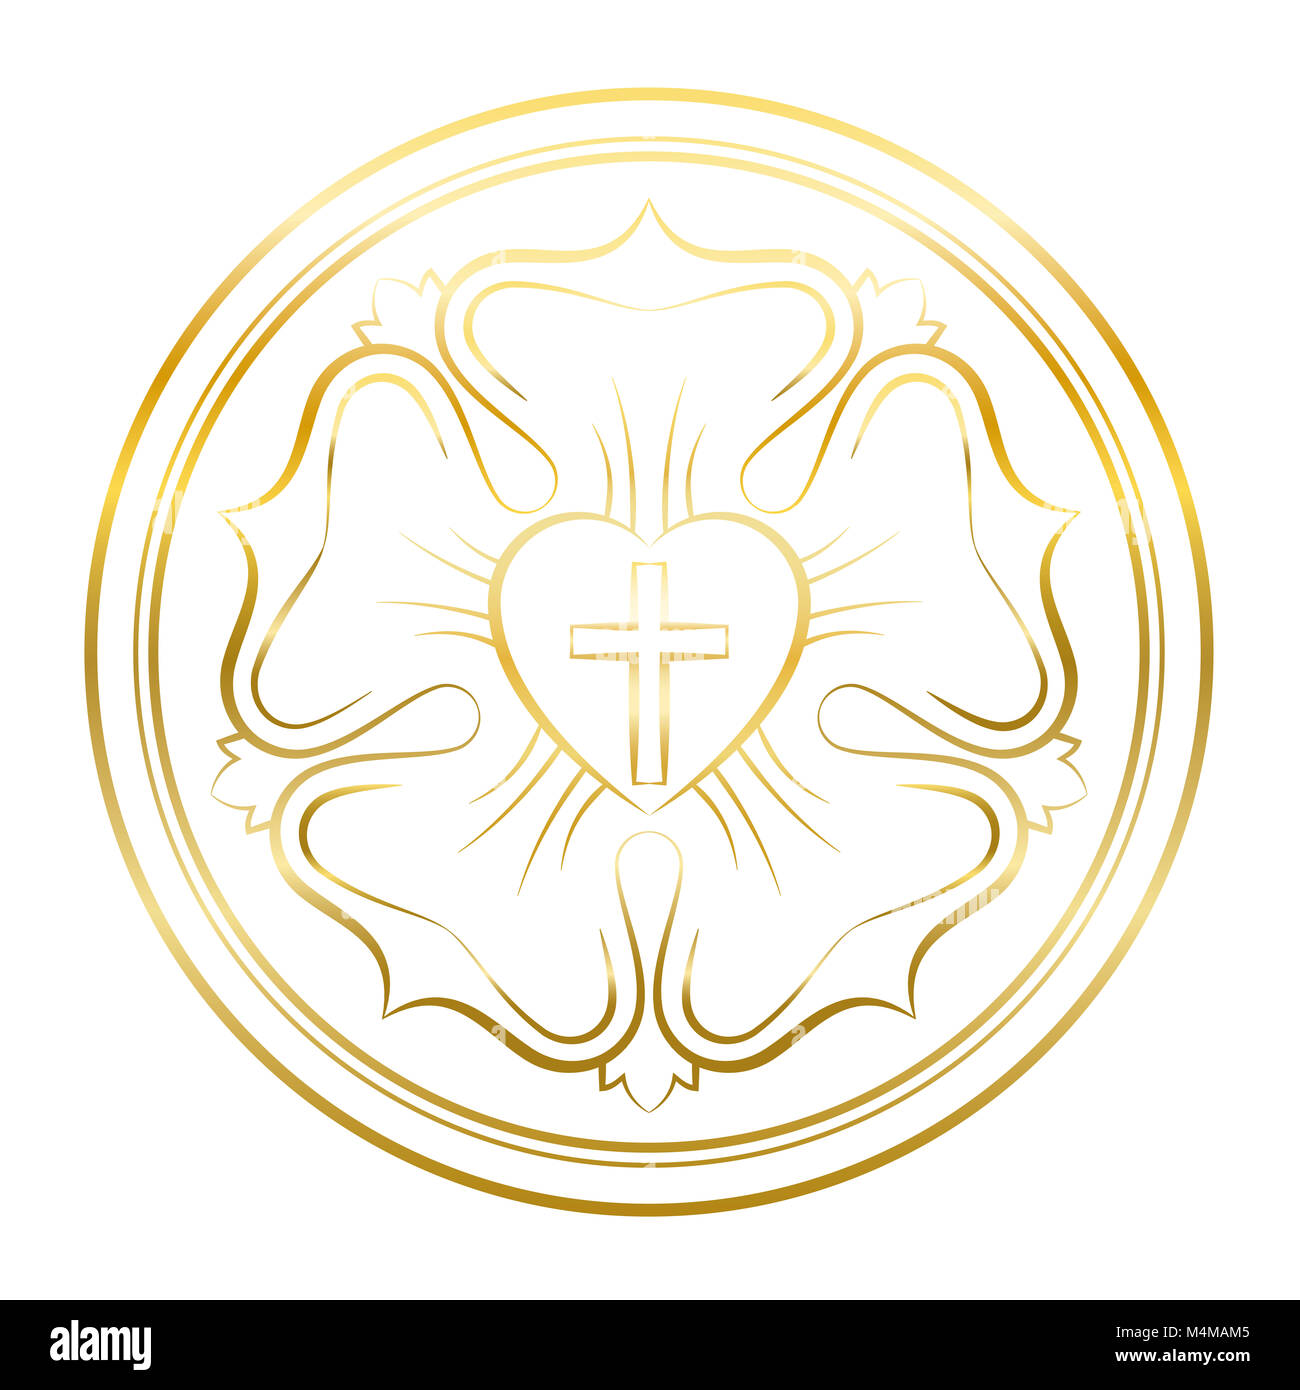 Lutero simbolo di rose. Illustrazione d'oro su sfondo bianco. Martin Lutero - una guarnizione, simbolo del luteranesimo, costituito da una croce, cuore, rose, anello. Foto Stock